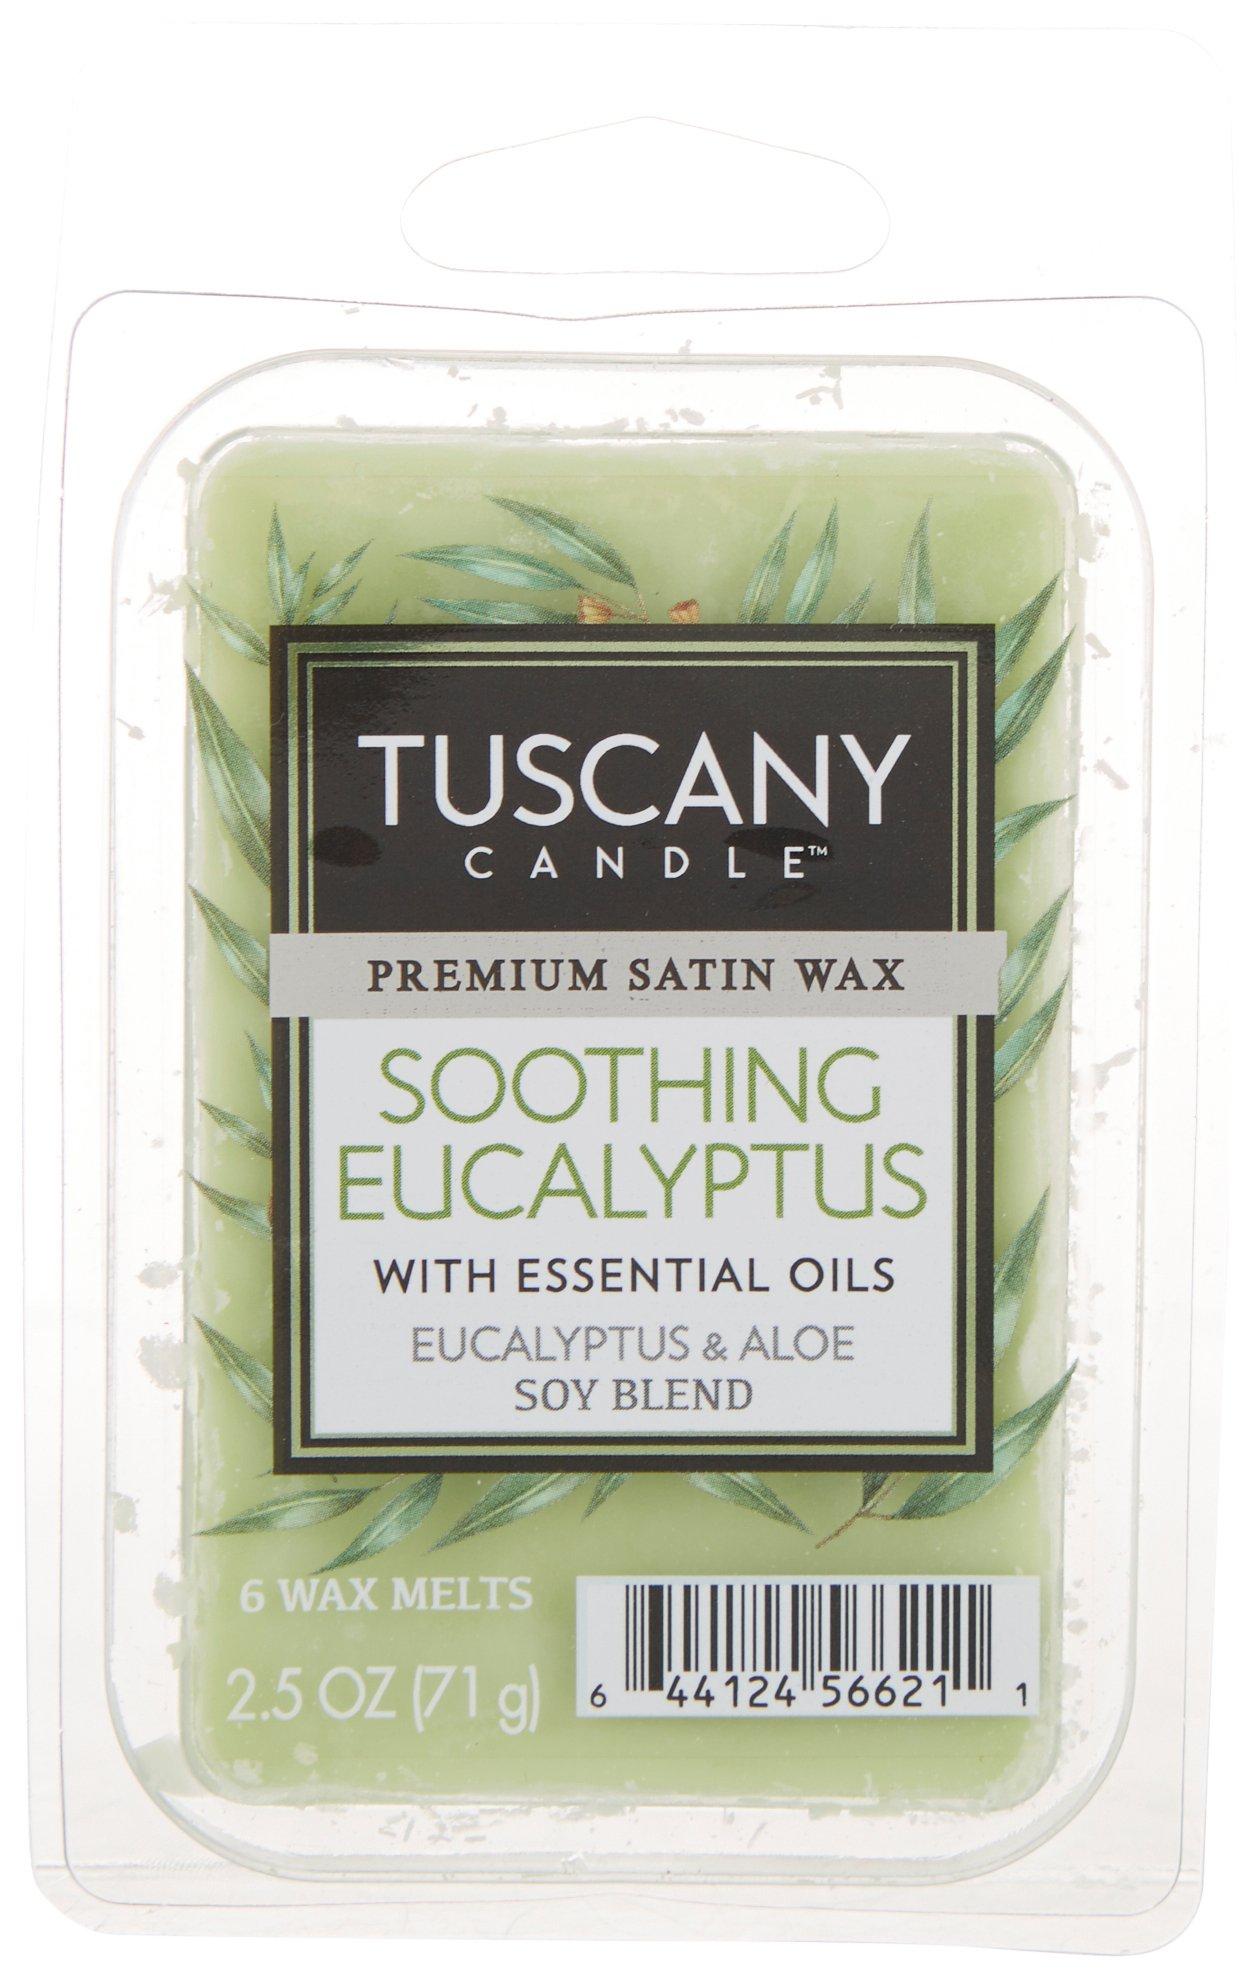 Tuscany 2.5 oz. Soothing Eucalyptus Wax Melts